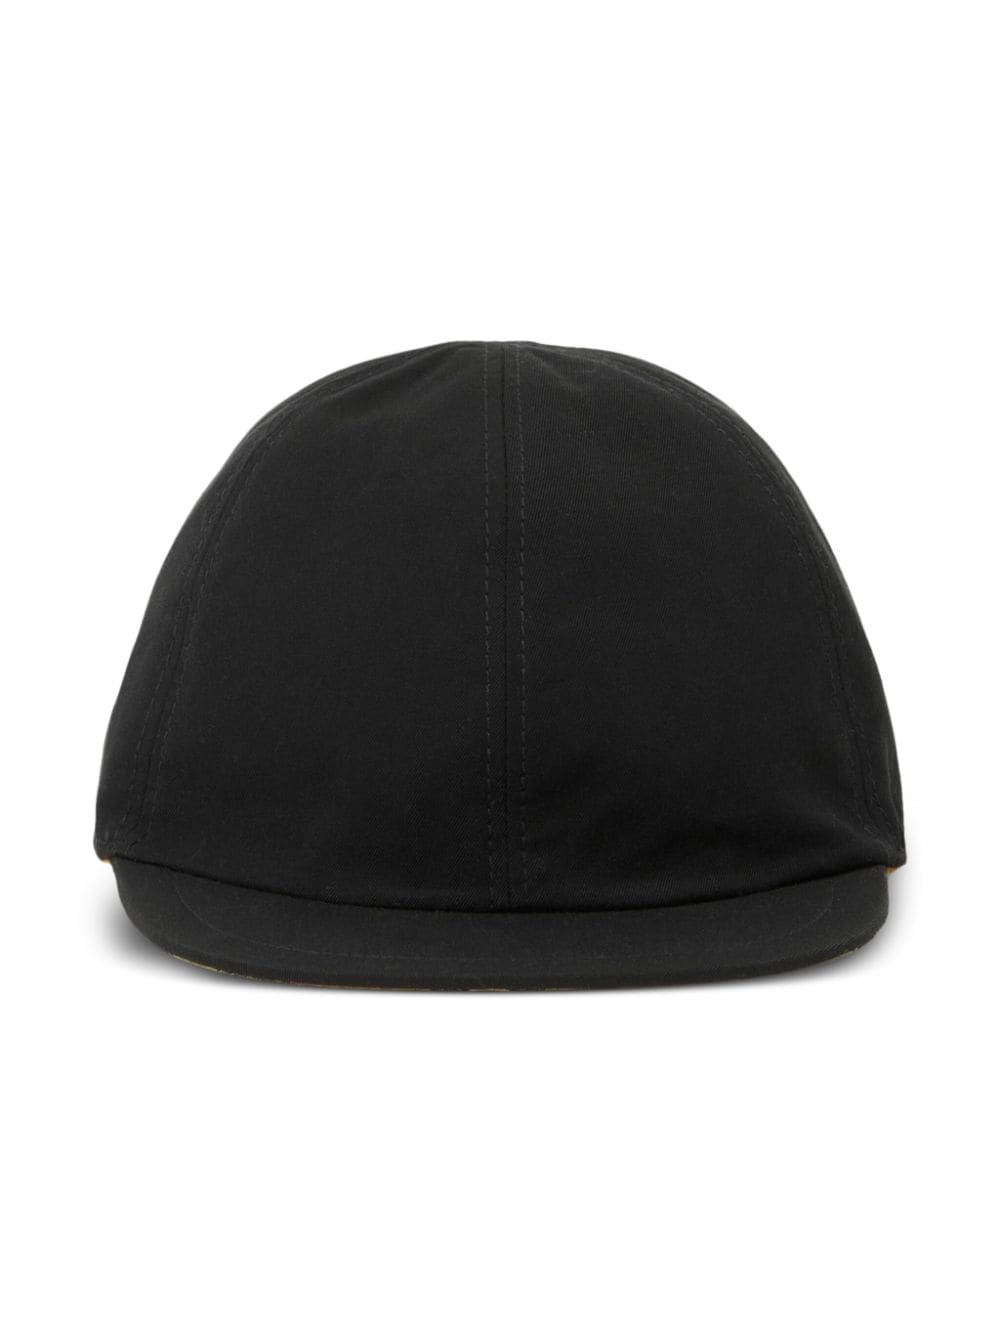 Black baseball cap for boys